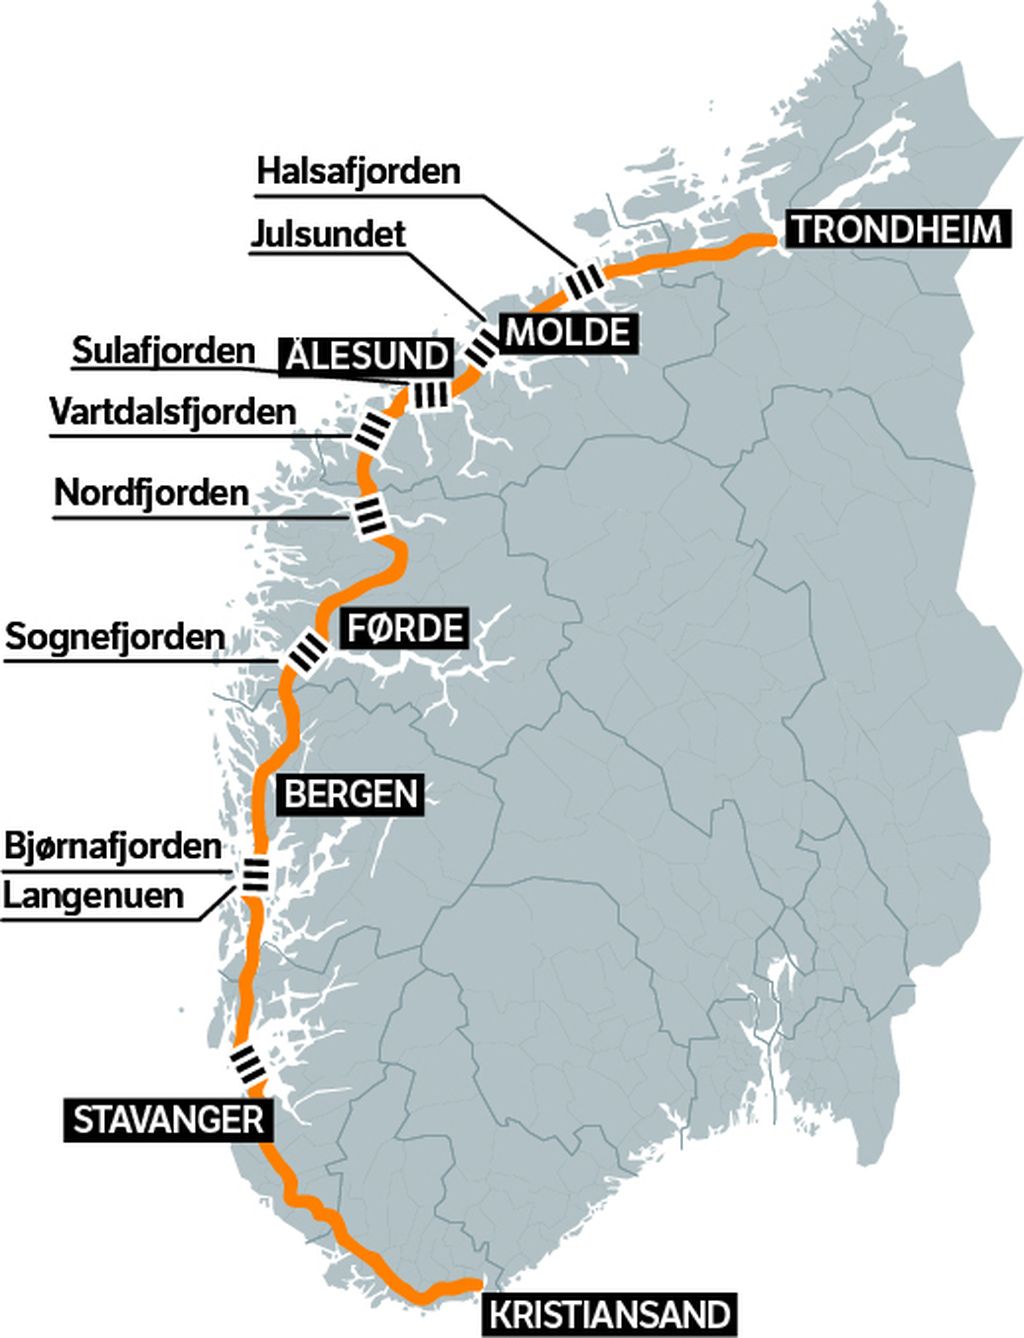 Fjordovi koji usporavaju putovanje